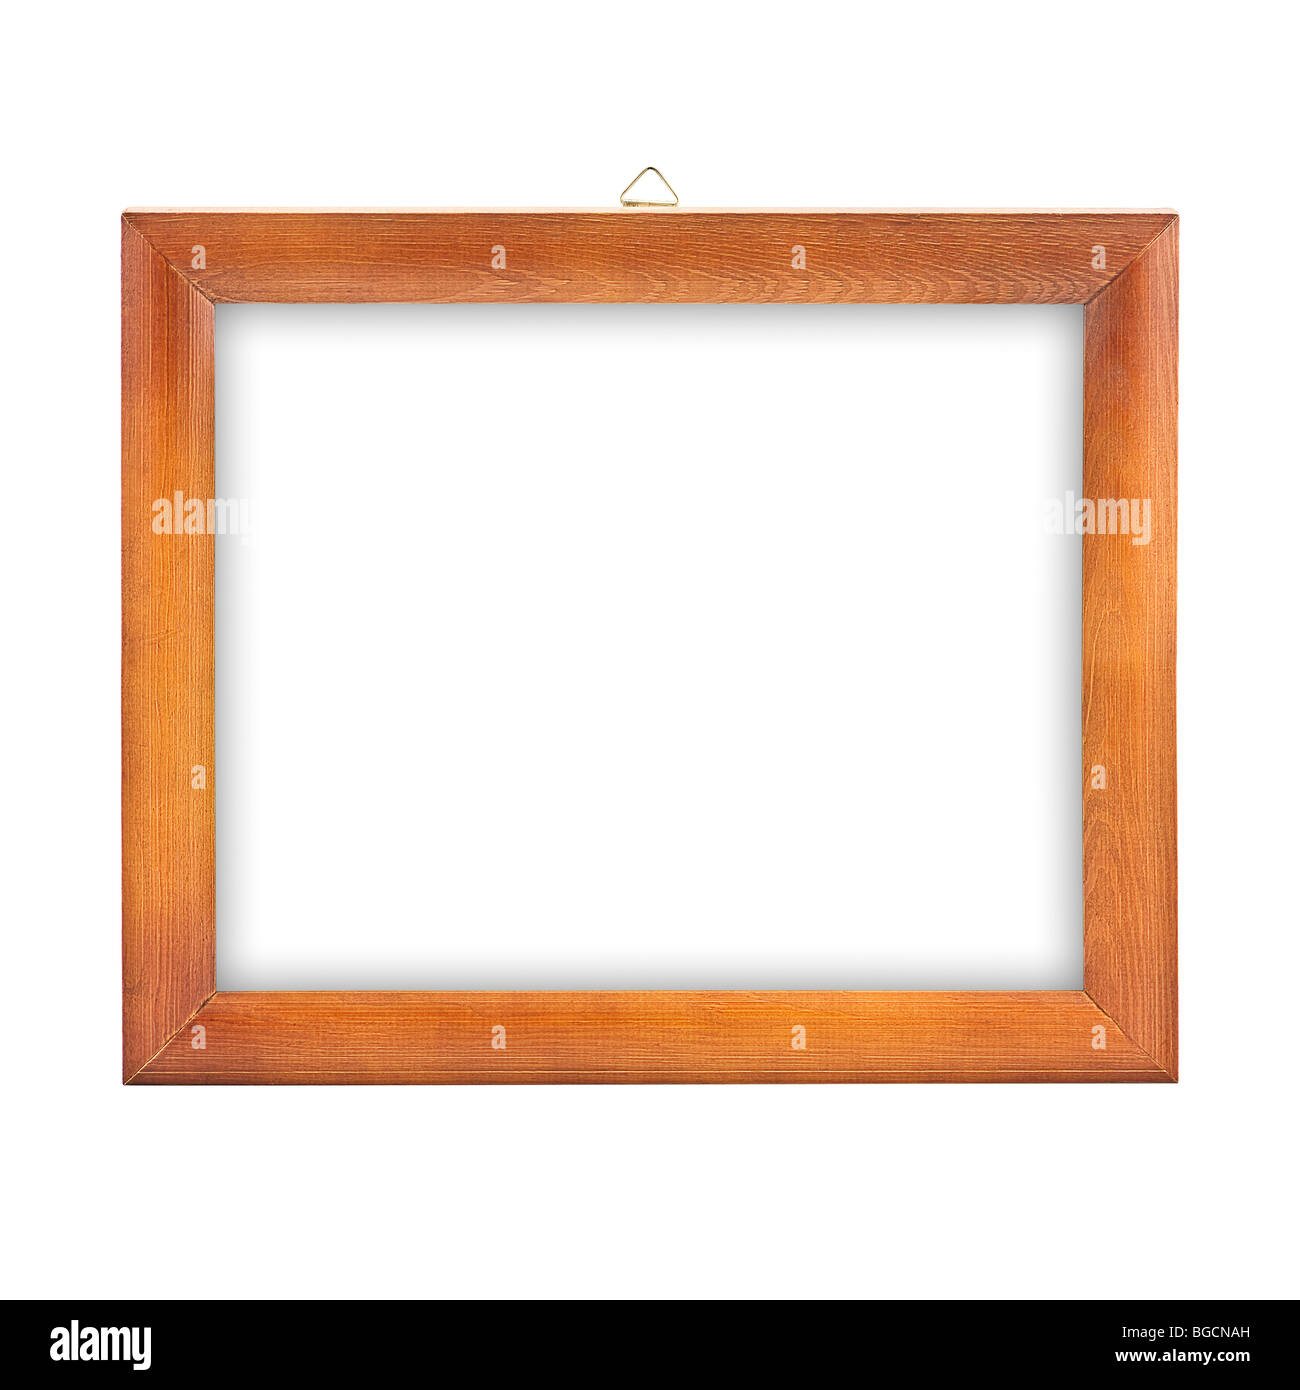 wood frame isolated Stock Photo